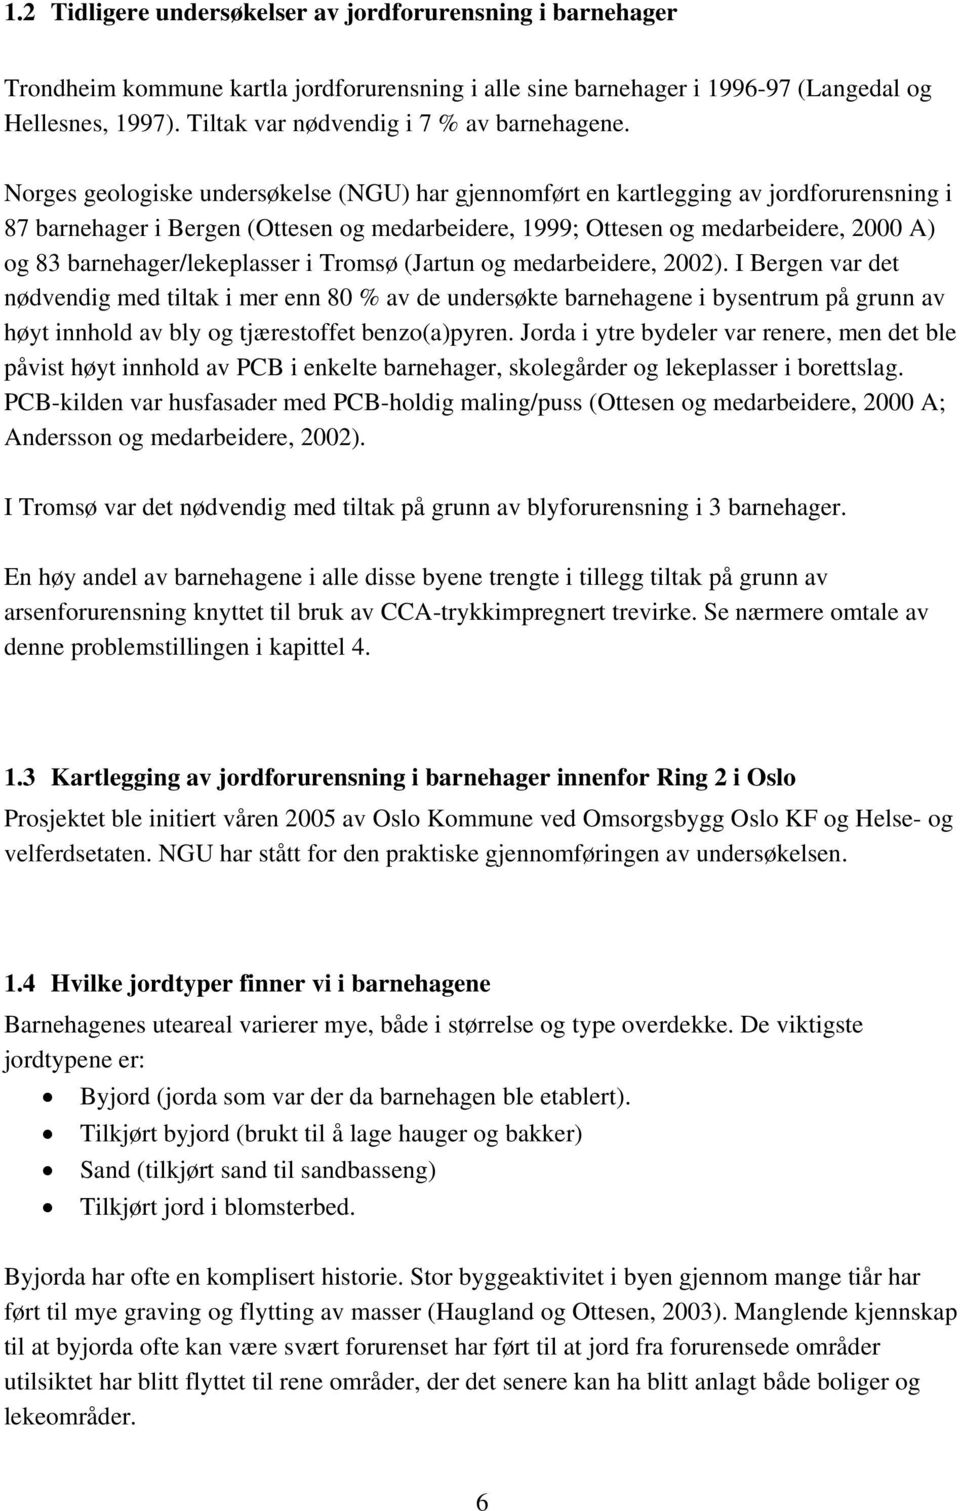 Norges geologiske undersøkelse (NGU) har gjennomført en kartlegging av jordforurensning i 87 barnehager i Bergen (Ottesen og medarbeidere, 1999; Ottesen og medarbeidere, 2000 A) og 83